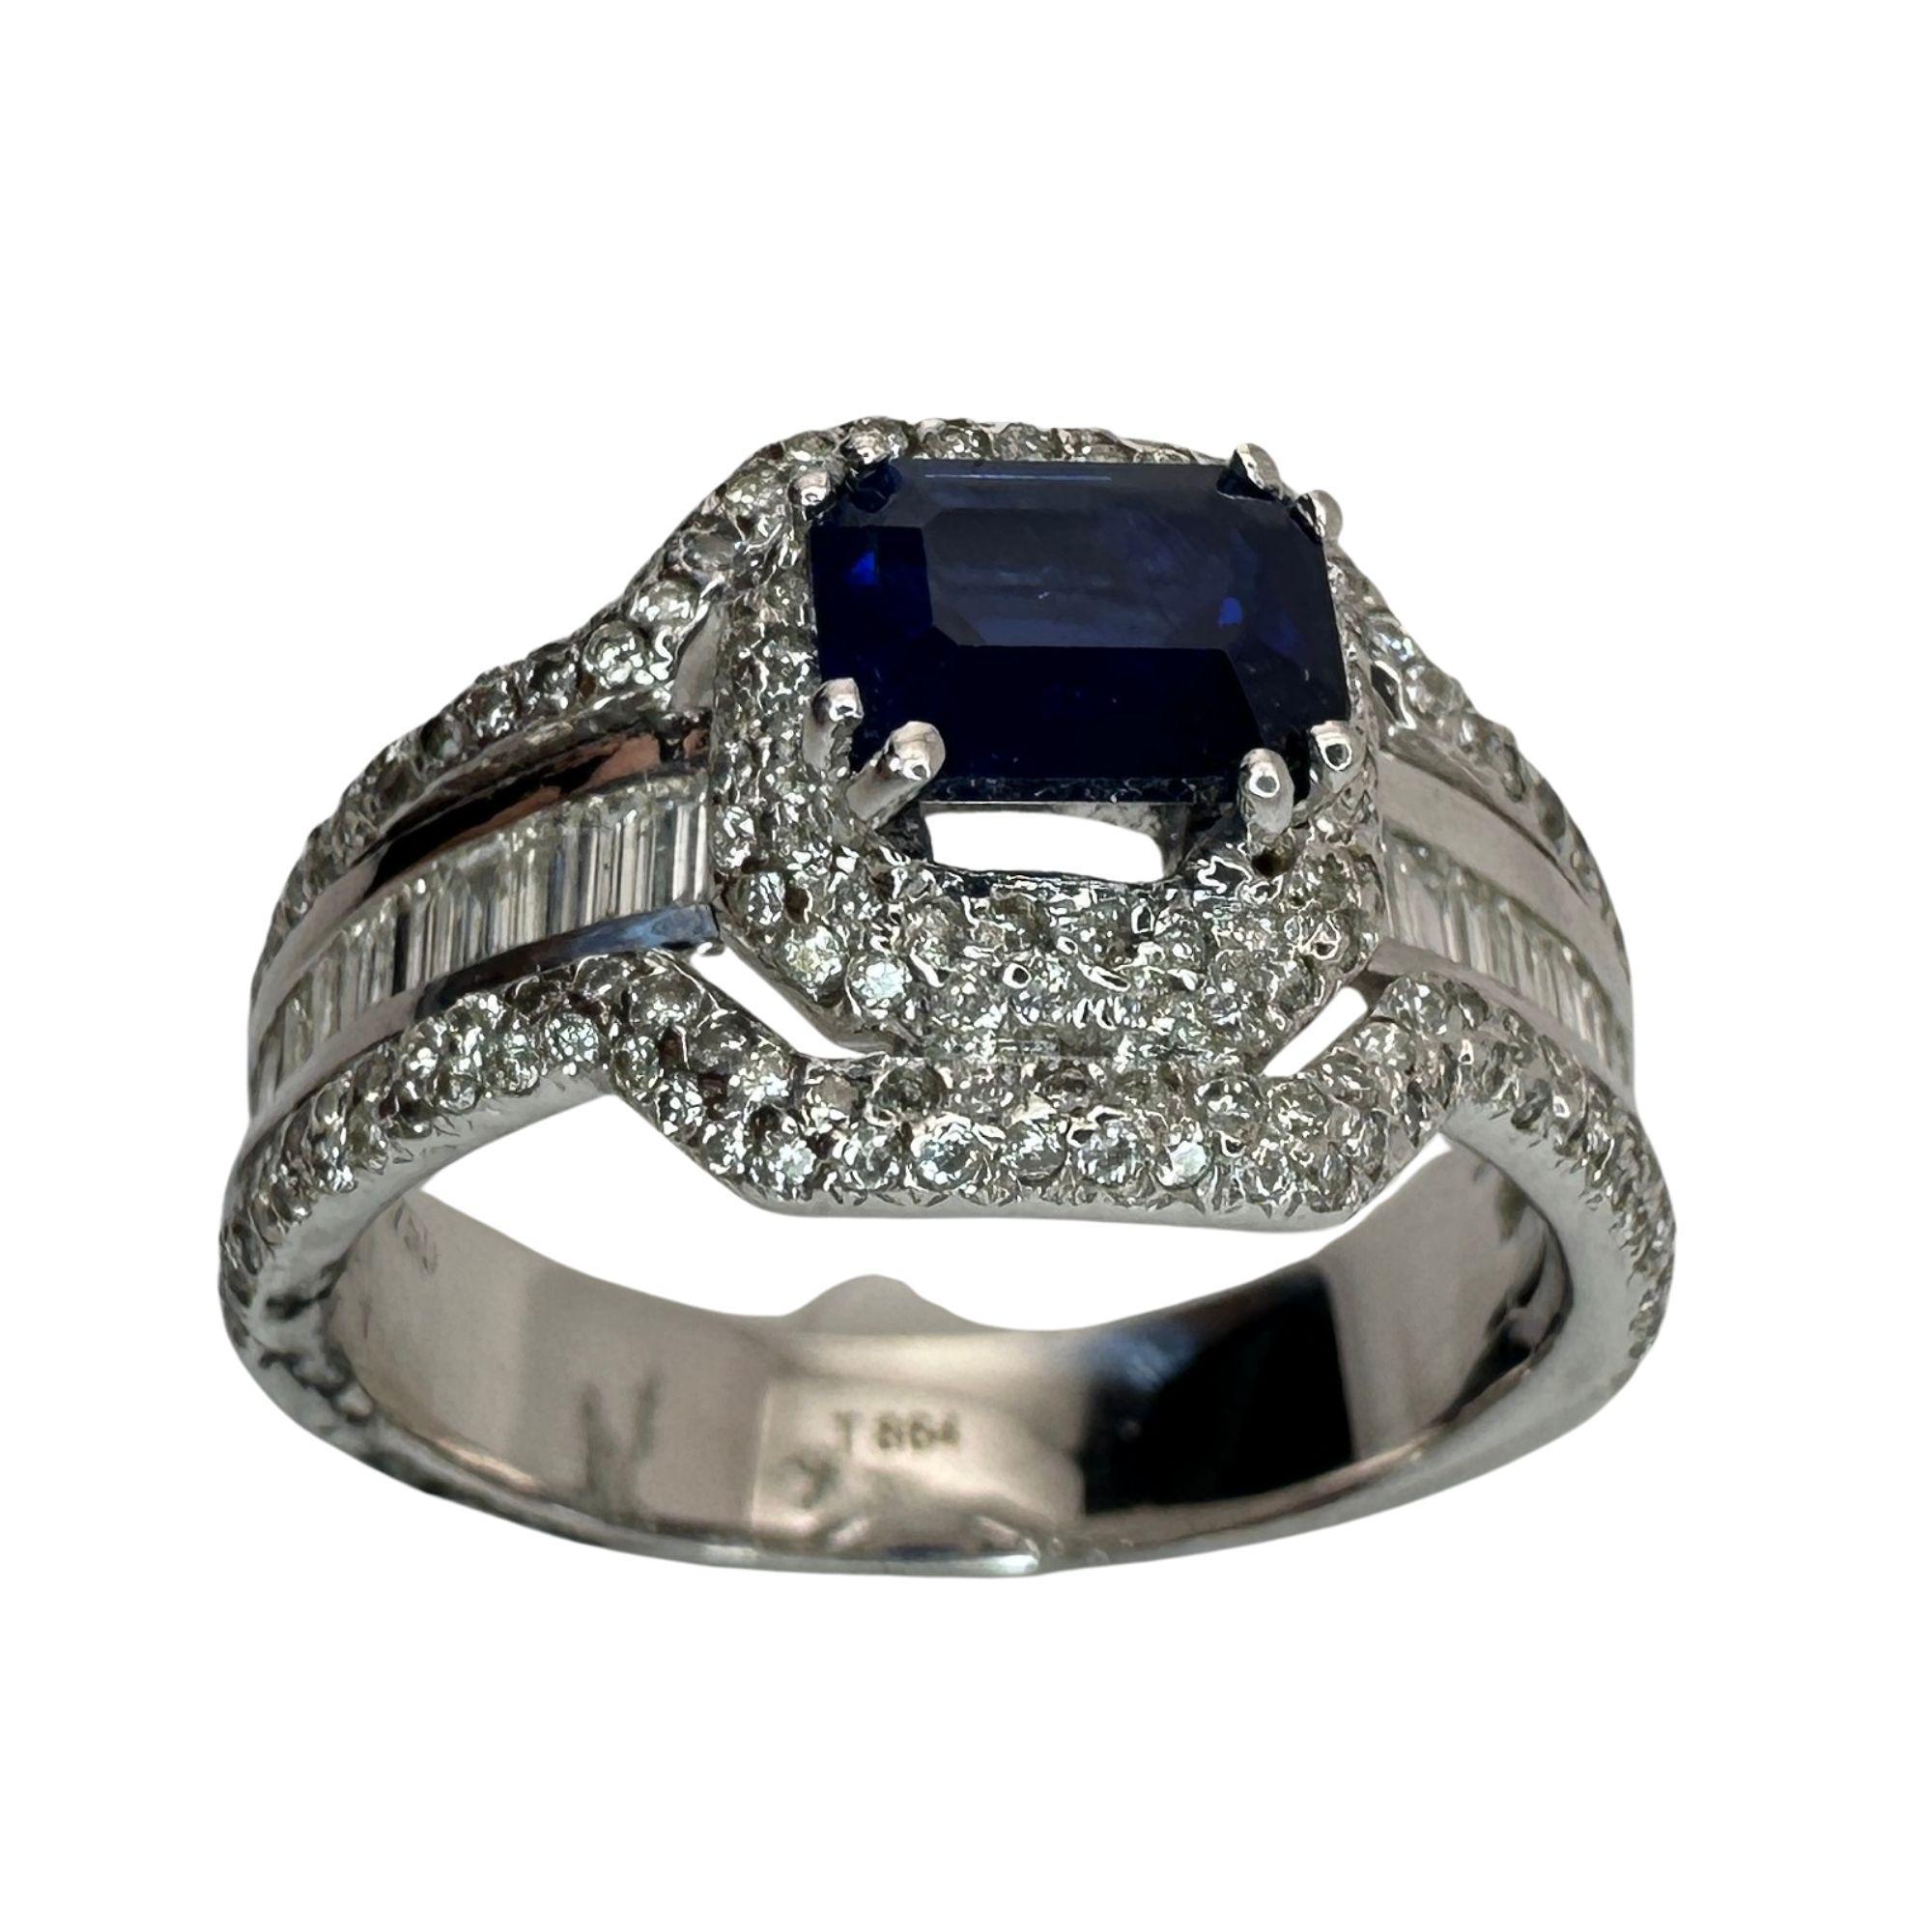 Erhöhen Sie Ihren Stil mit unserem 18-karätigen Diamant- und Saphirring. Der 1,57 Karat schwere Saphir in der Mitte ist von einem funkelnden Halo aus 0,60 Karat Diamanten umgeben, der von eleganten Diamanten im Baguetteschliff akzentuiert wird. Mit